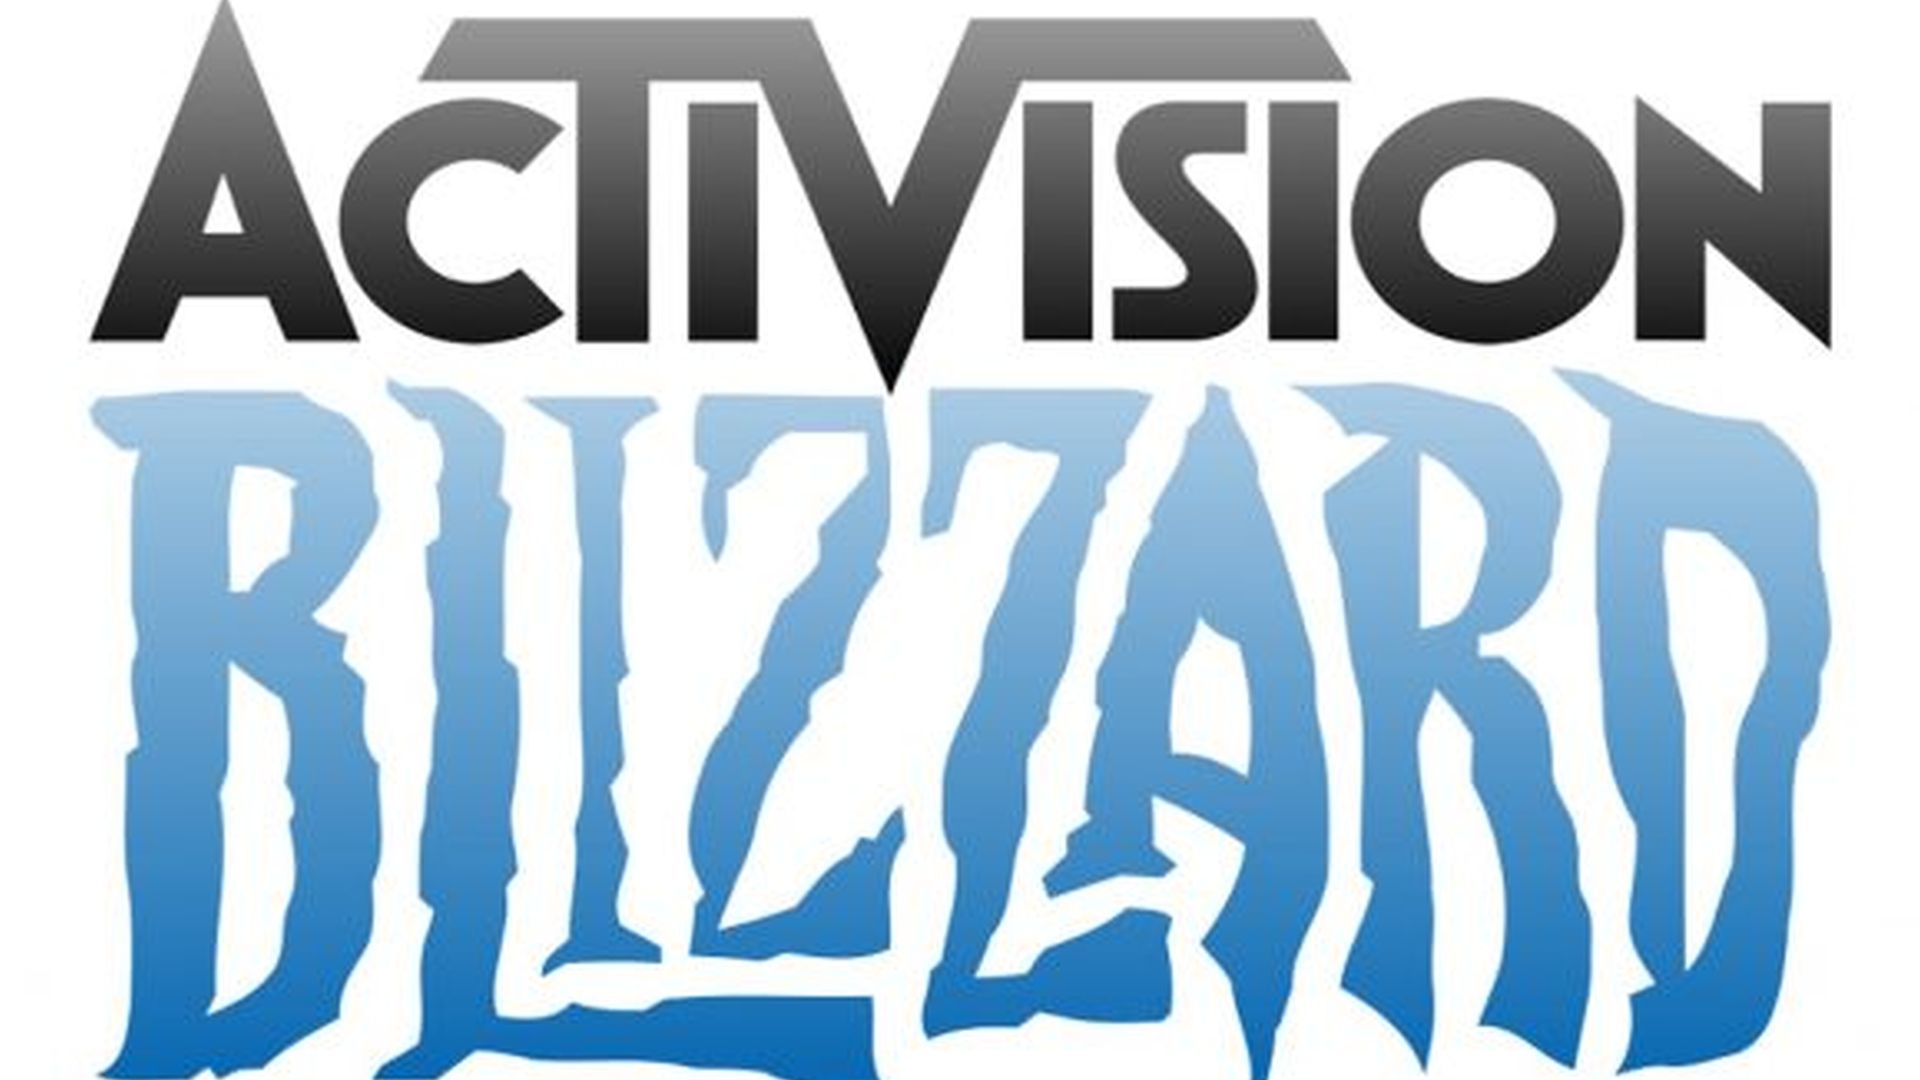 ABK Ажилчдын холбоо Activision Blizzard-д өөрчлөлт хийхийг шаардаж байна